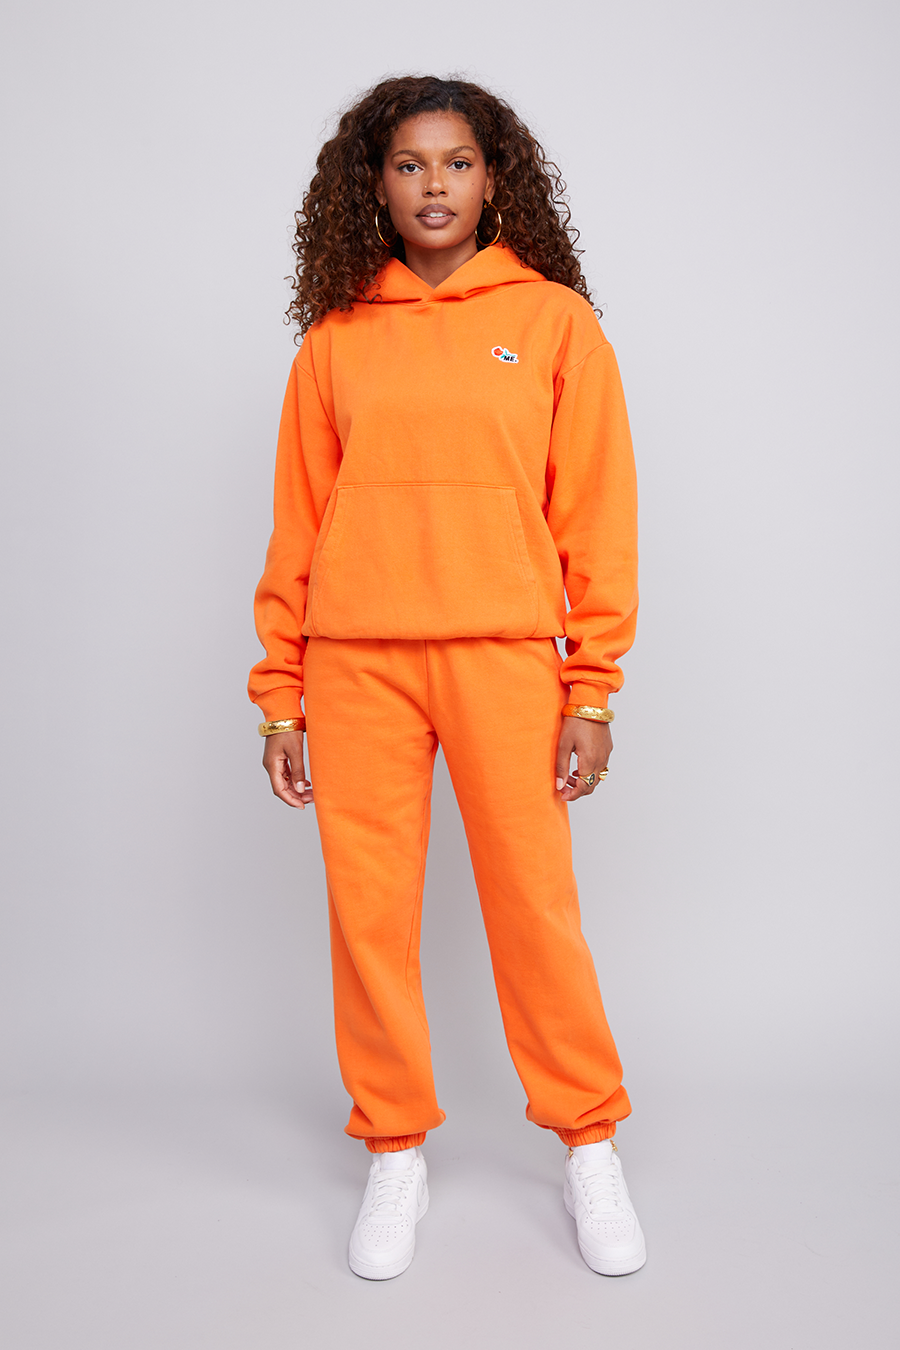 ME. Rose Sweatpants Safety Orange – Melody Ehsani